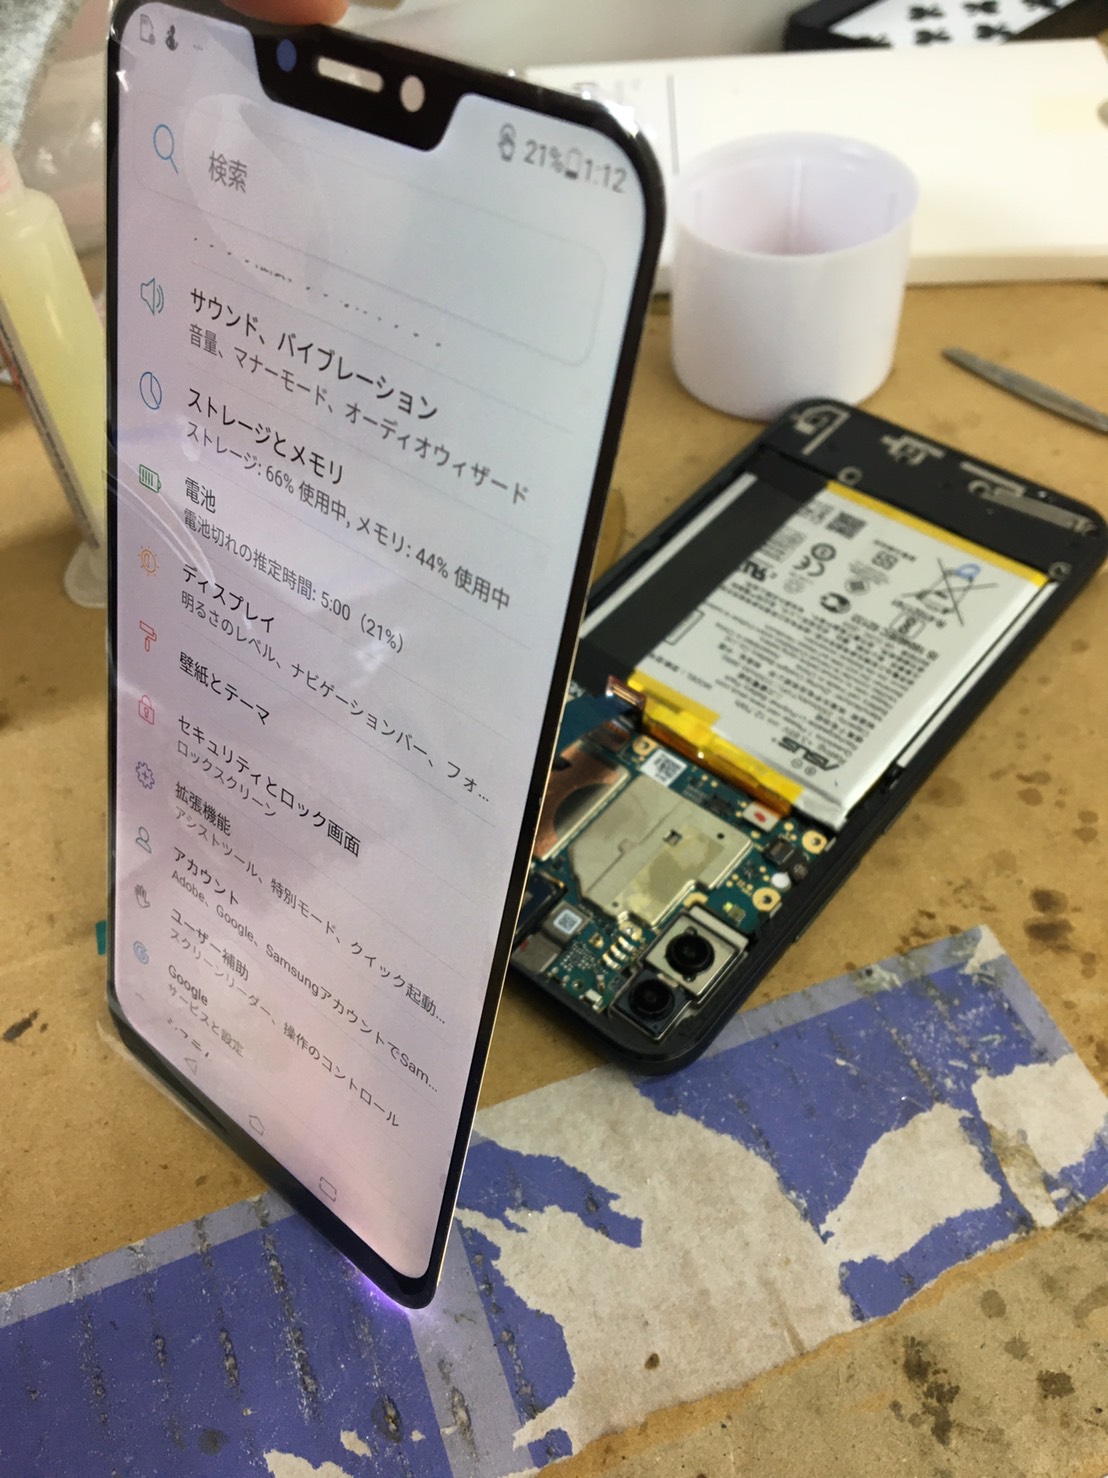 Zenfone 5をアーケードで画面側から落としてしまい画面のガラスが全体的にひび割れてしまった スマホスピタル熊本店がzenfone 5の画面交換修理を承りました Xperia Galaxy Zenfone Huawei Nexus修理のアンドロイドホスピタル